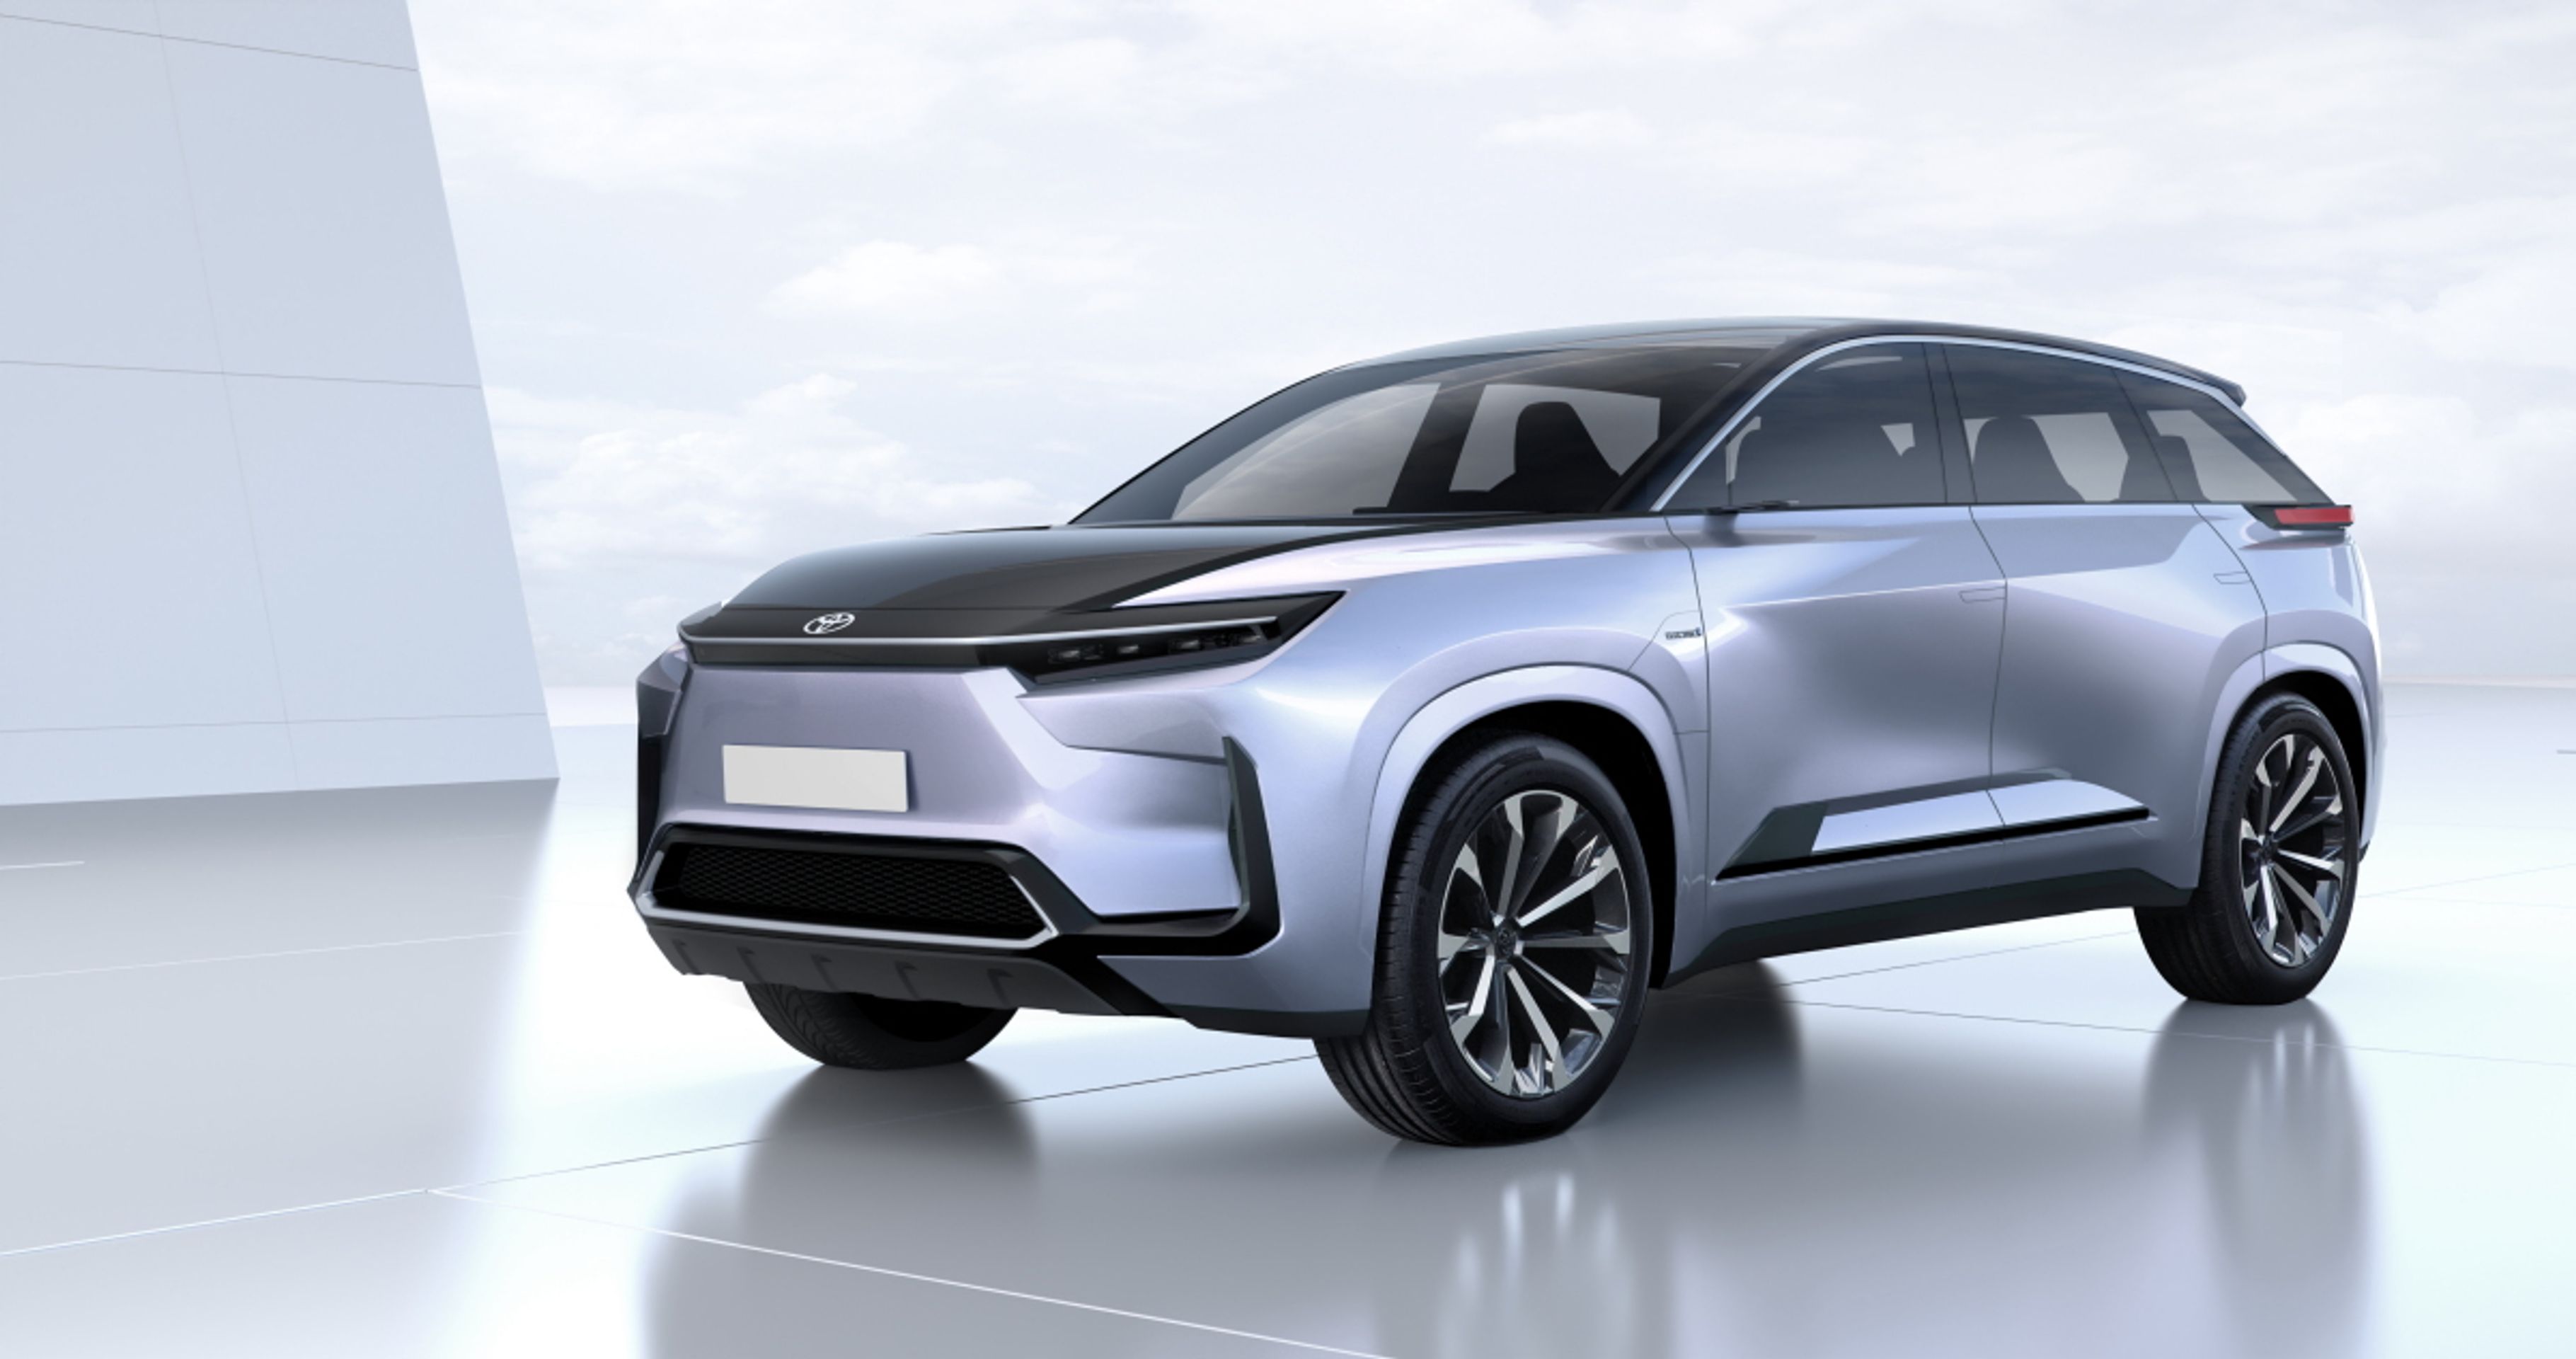 Budoucí bateriové vozy značek Toyota a Lexus - Takhle vypadá bateriová budoucnost podle značek Toyota a Lexus (6/23)